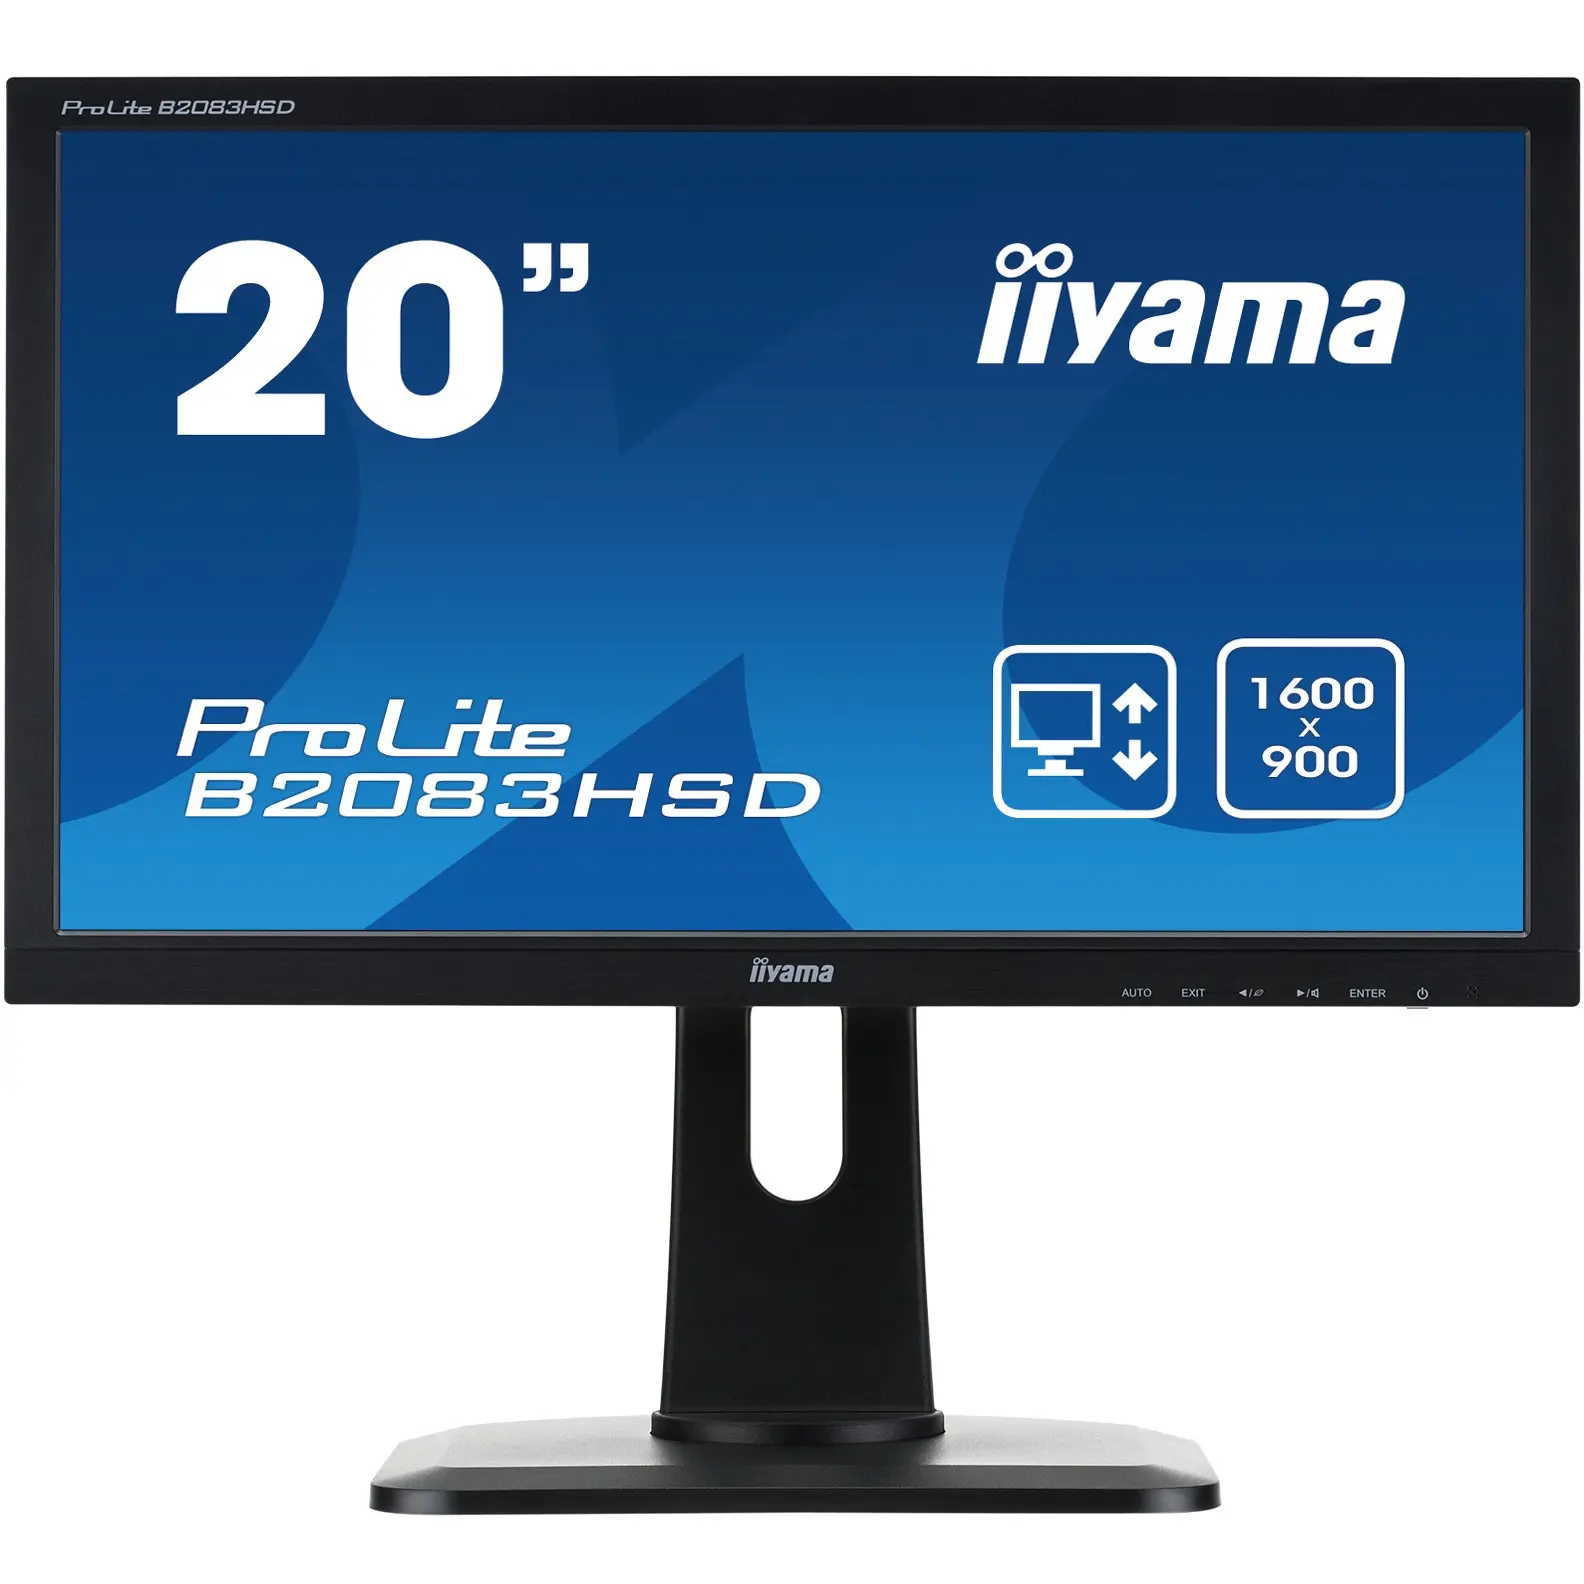 iiyama ProLite B2083HSD-B1, 49,5 cm (19.5 Zoll), 1600 x 900 Pixel, HD+, LED, 5 ms, Schwarz